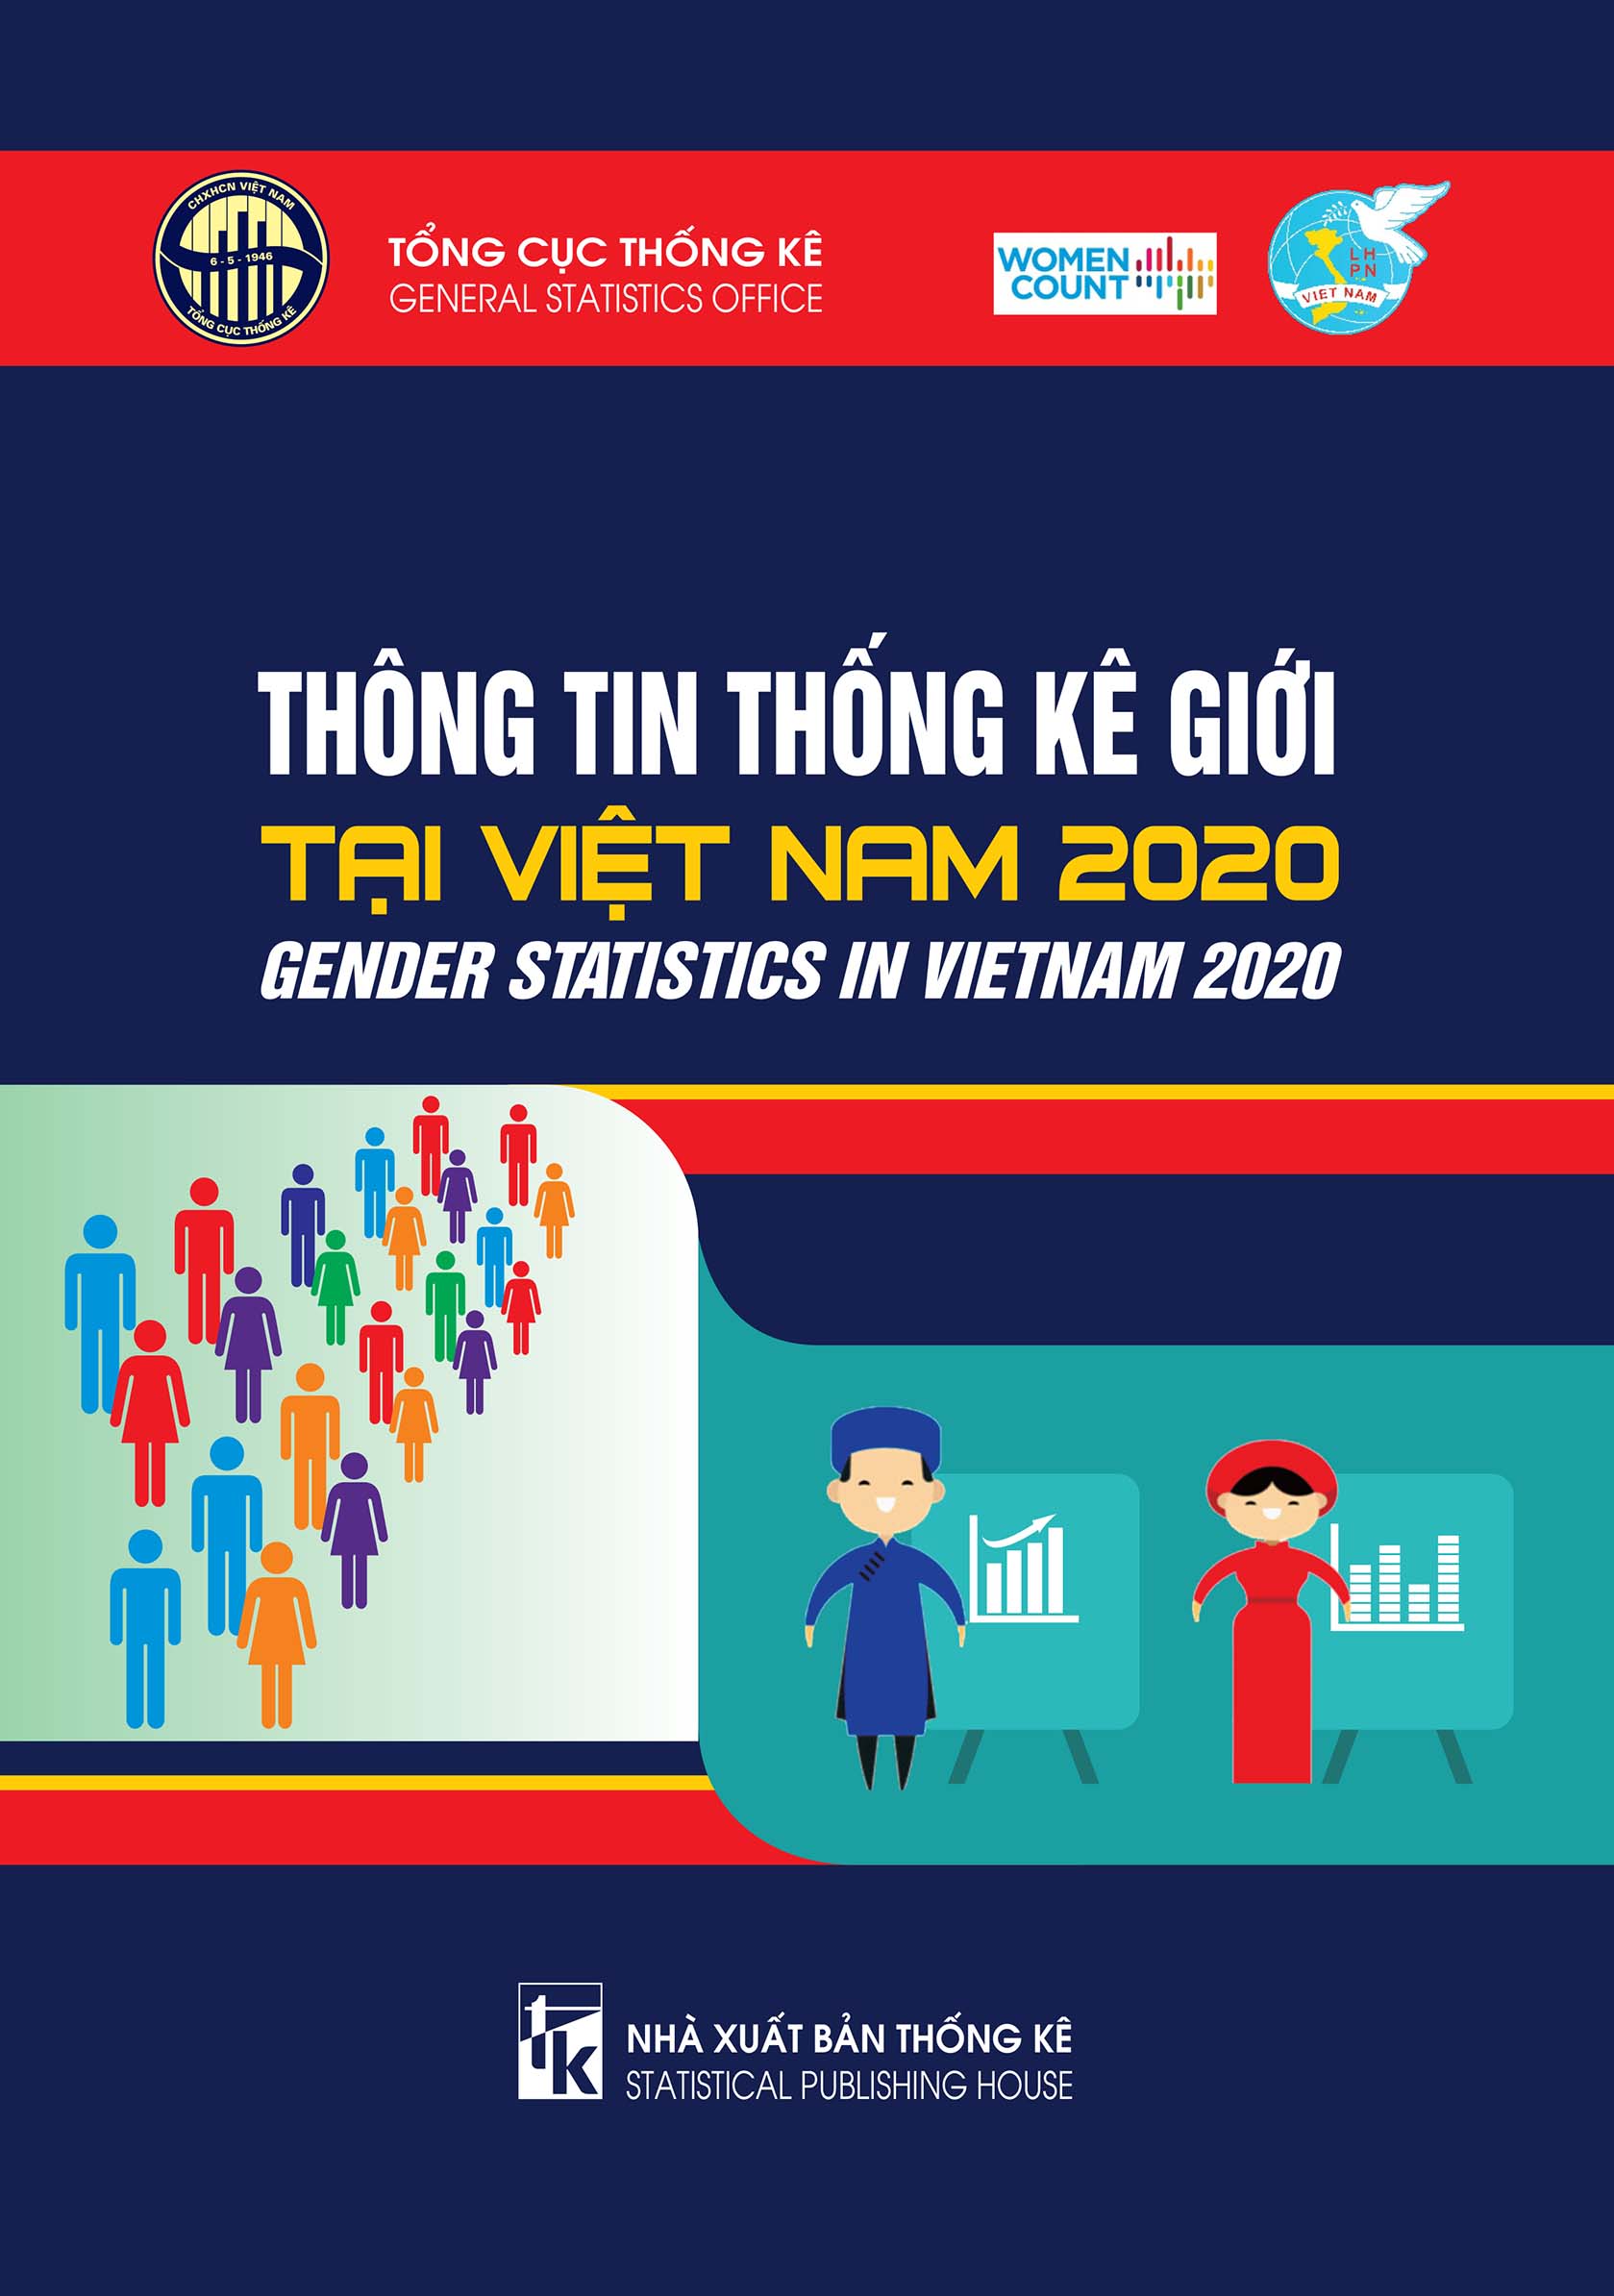 Gender statistics in Viet Nam 2020